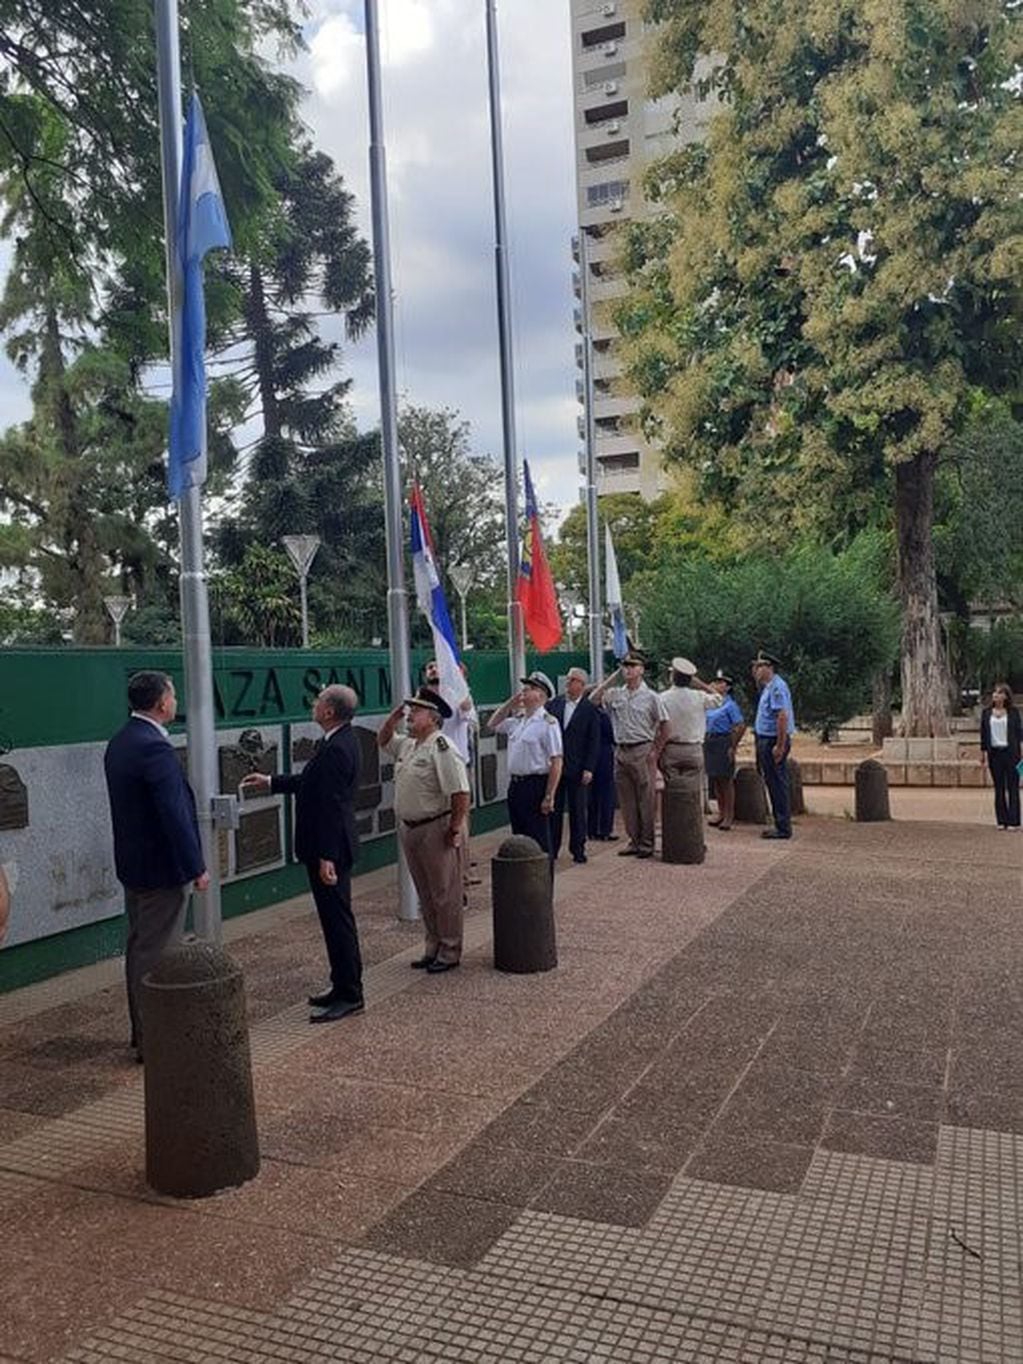 Izamiento de banderas en la Plaza San Martín al conmemorarse el natalicio del héroe. (Twitter)